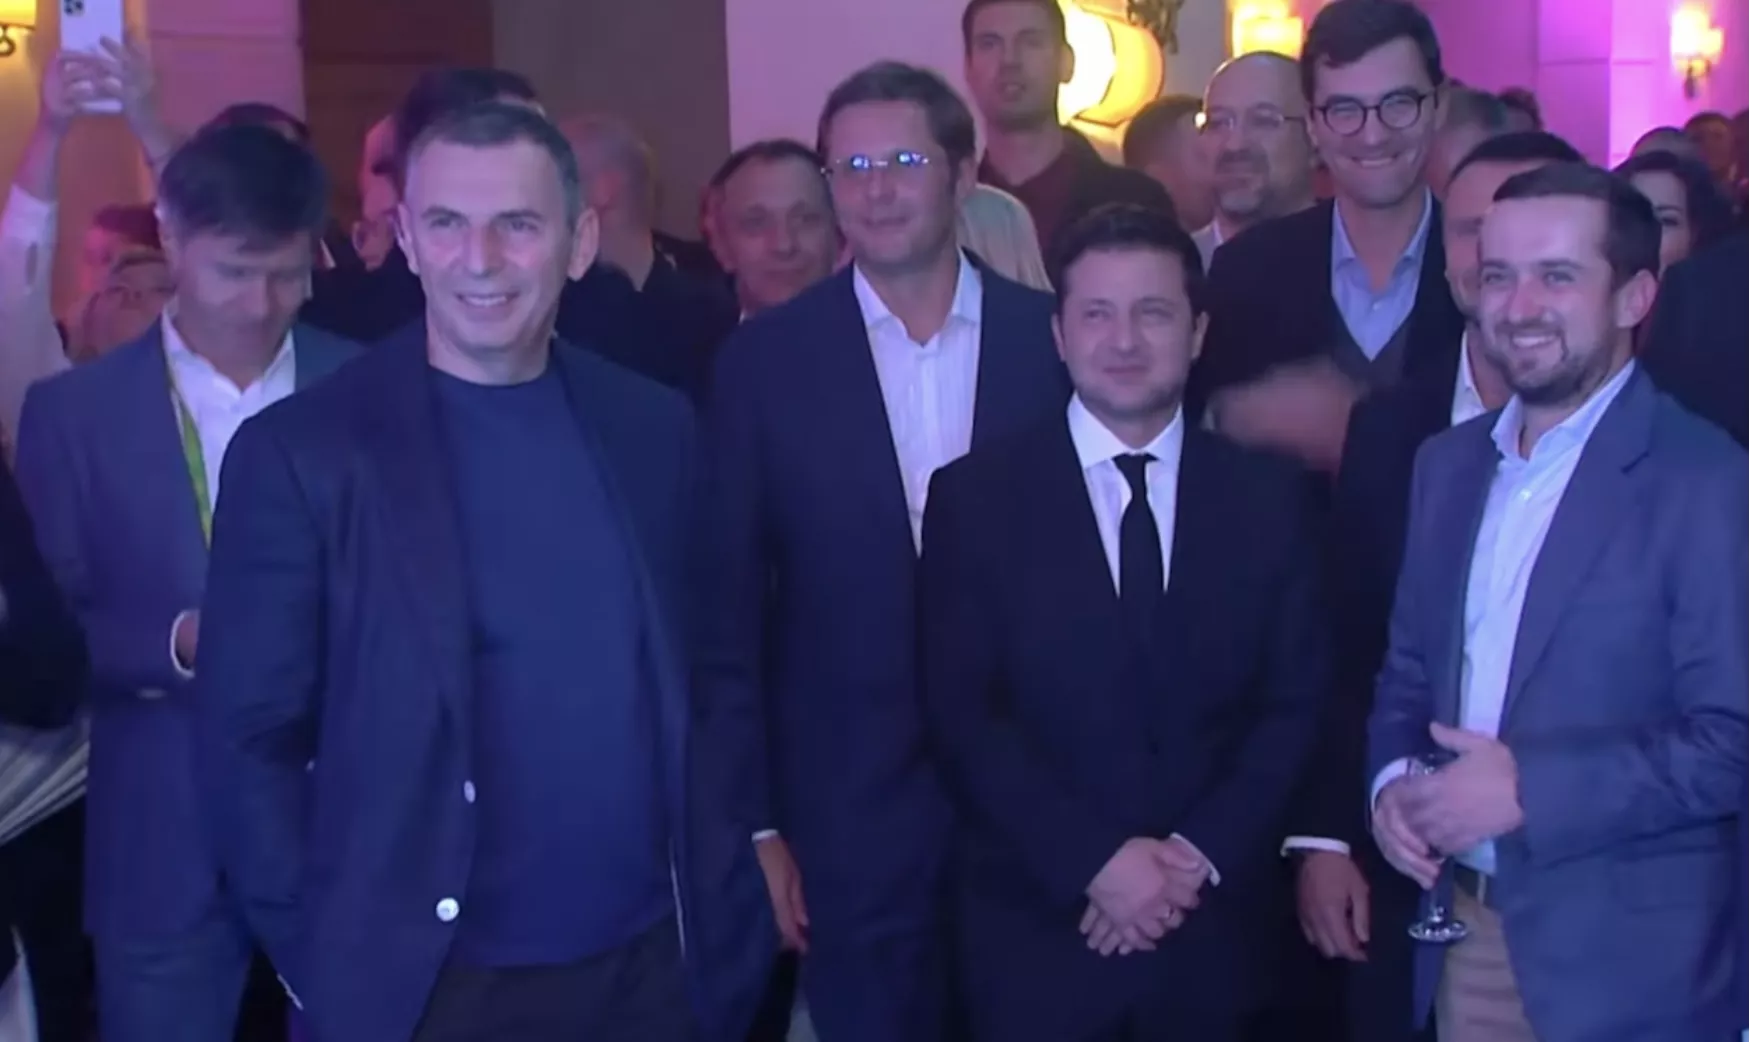 Президент Зеленский и его помощники сдерживаются, чтобы не податься в пляс / Cкриншот из программы "Светская жизнь"